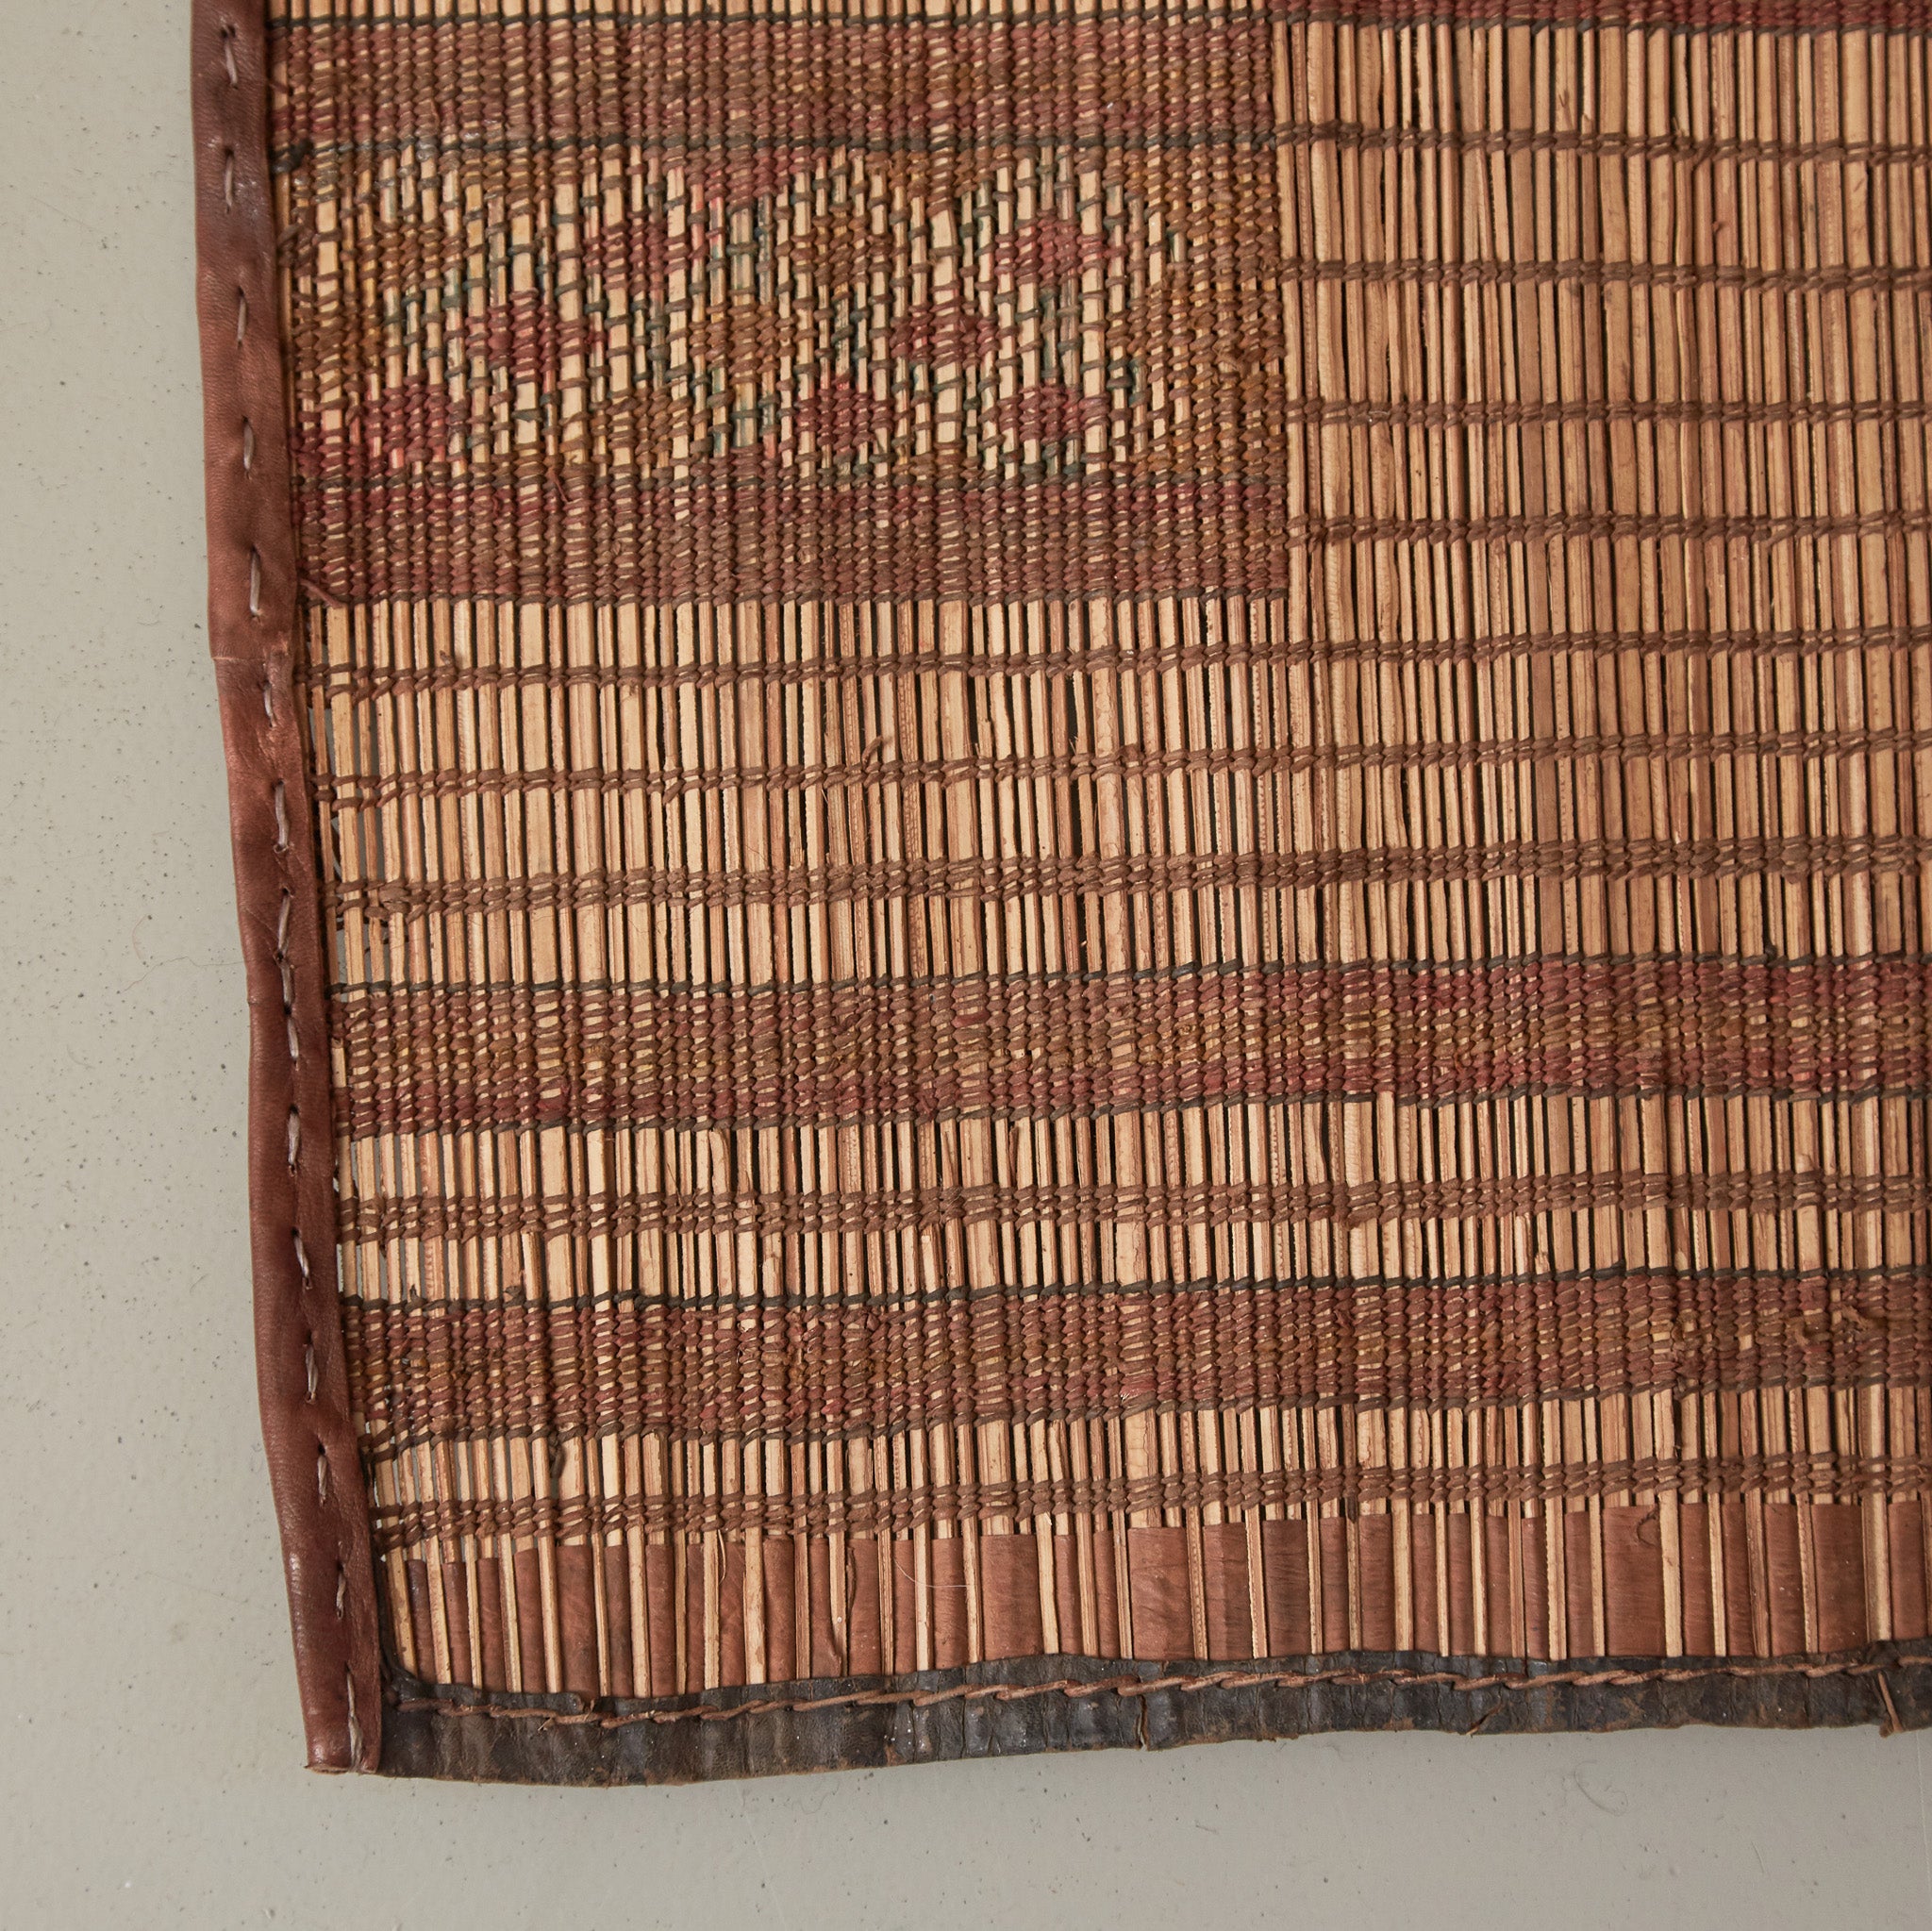 dettaglio dell'angolo di una Stuoia touareg vintage in legno e cuoio